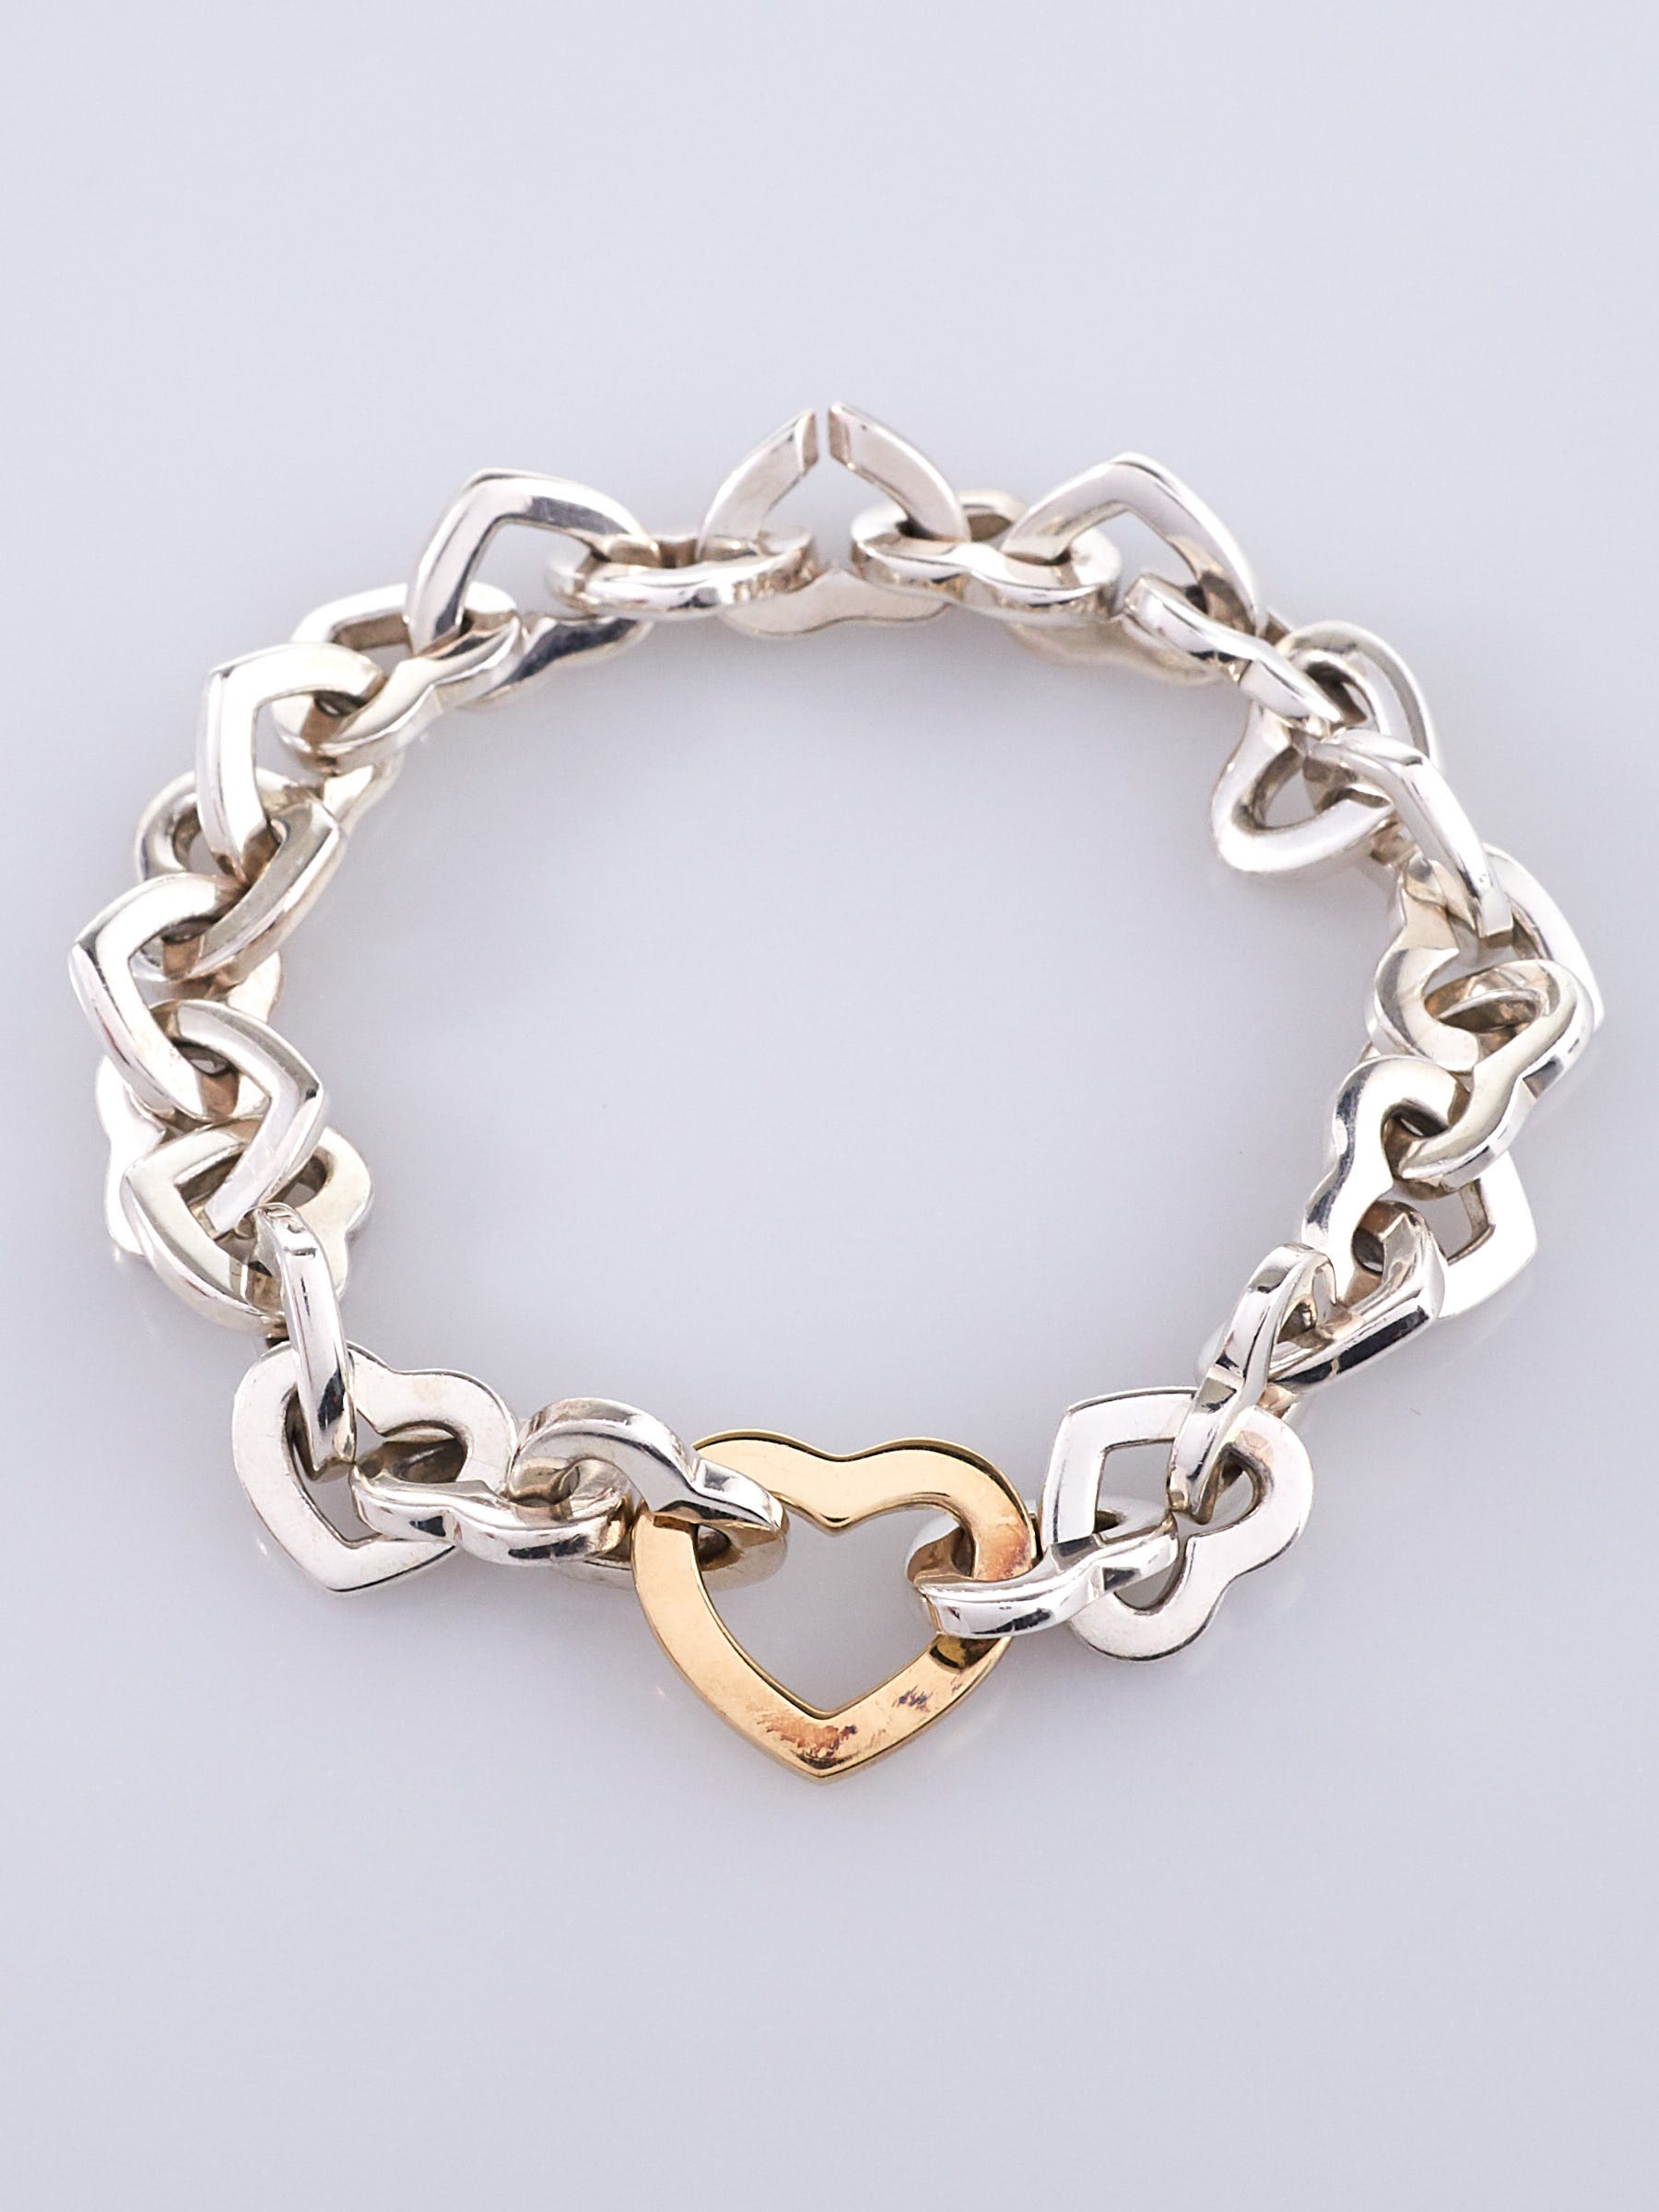 Tiffany & Co. Vintage 18K YG & Sterling Silver Link Bracelet